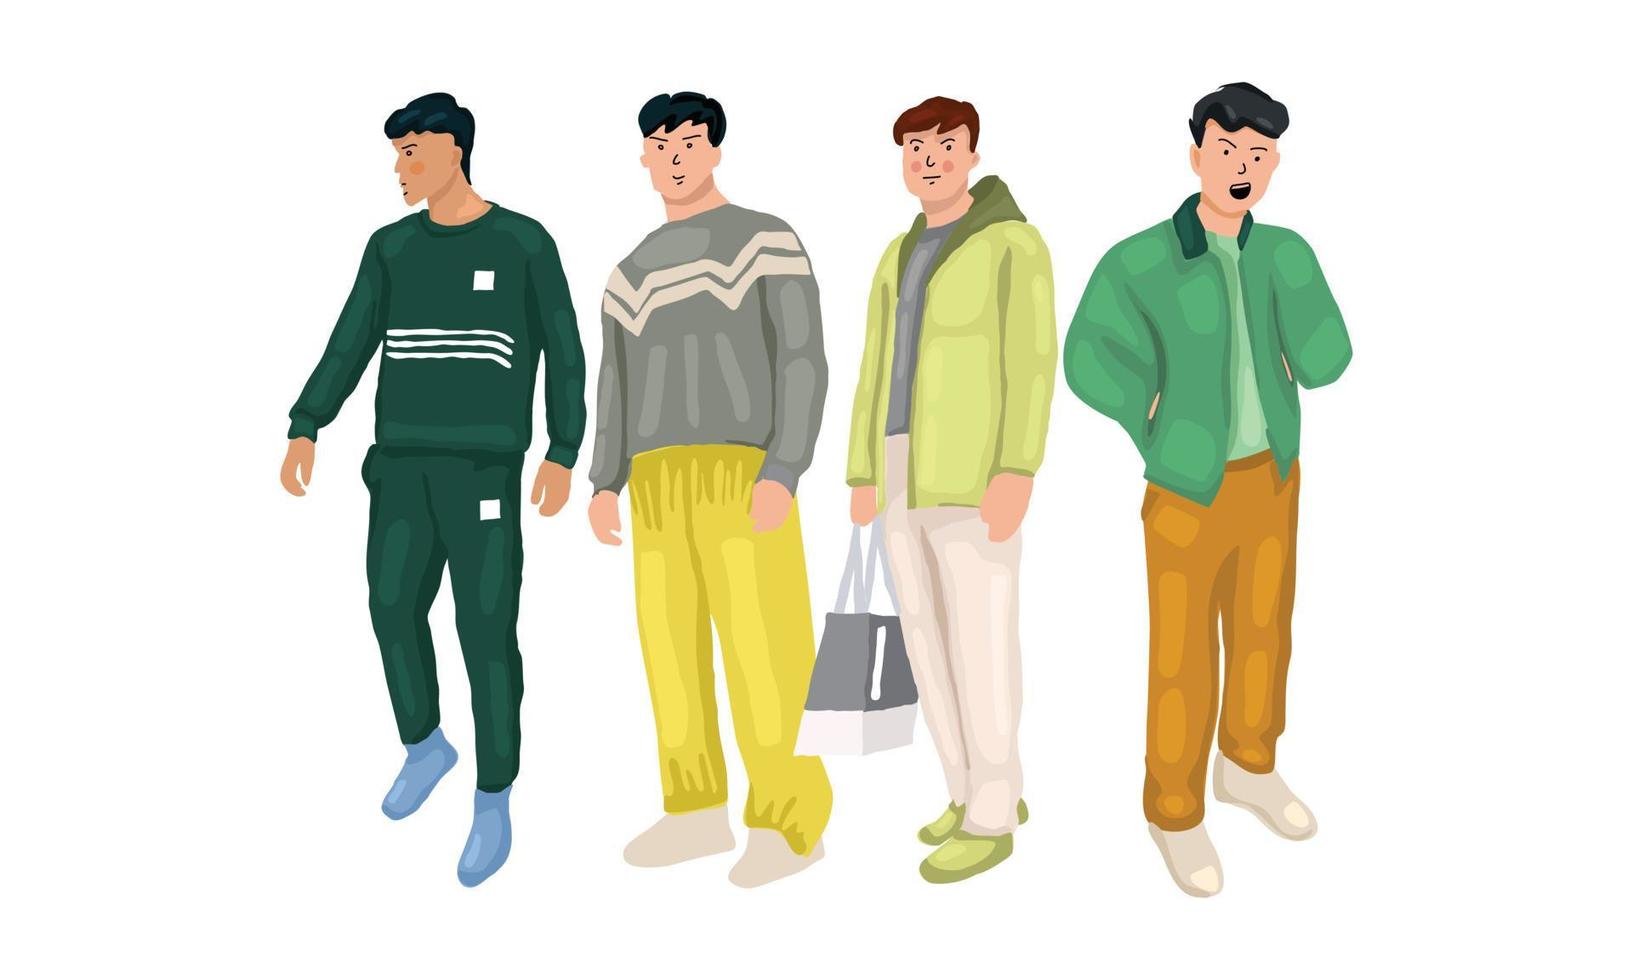 pojken och hans vänner poserar iklädd avslappnad outfit i färg mint, grön, matcha, färgglad stil vektor